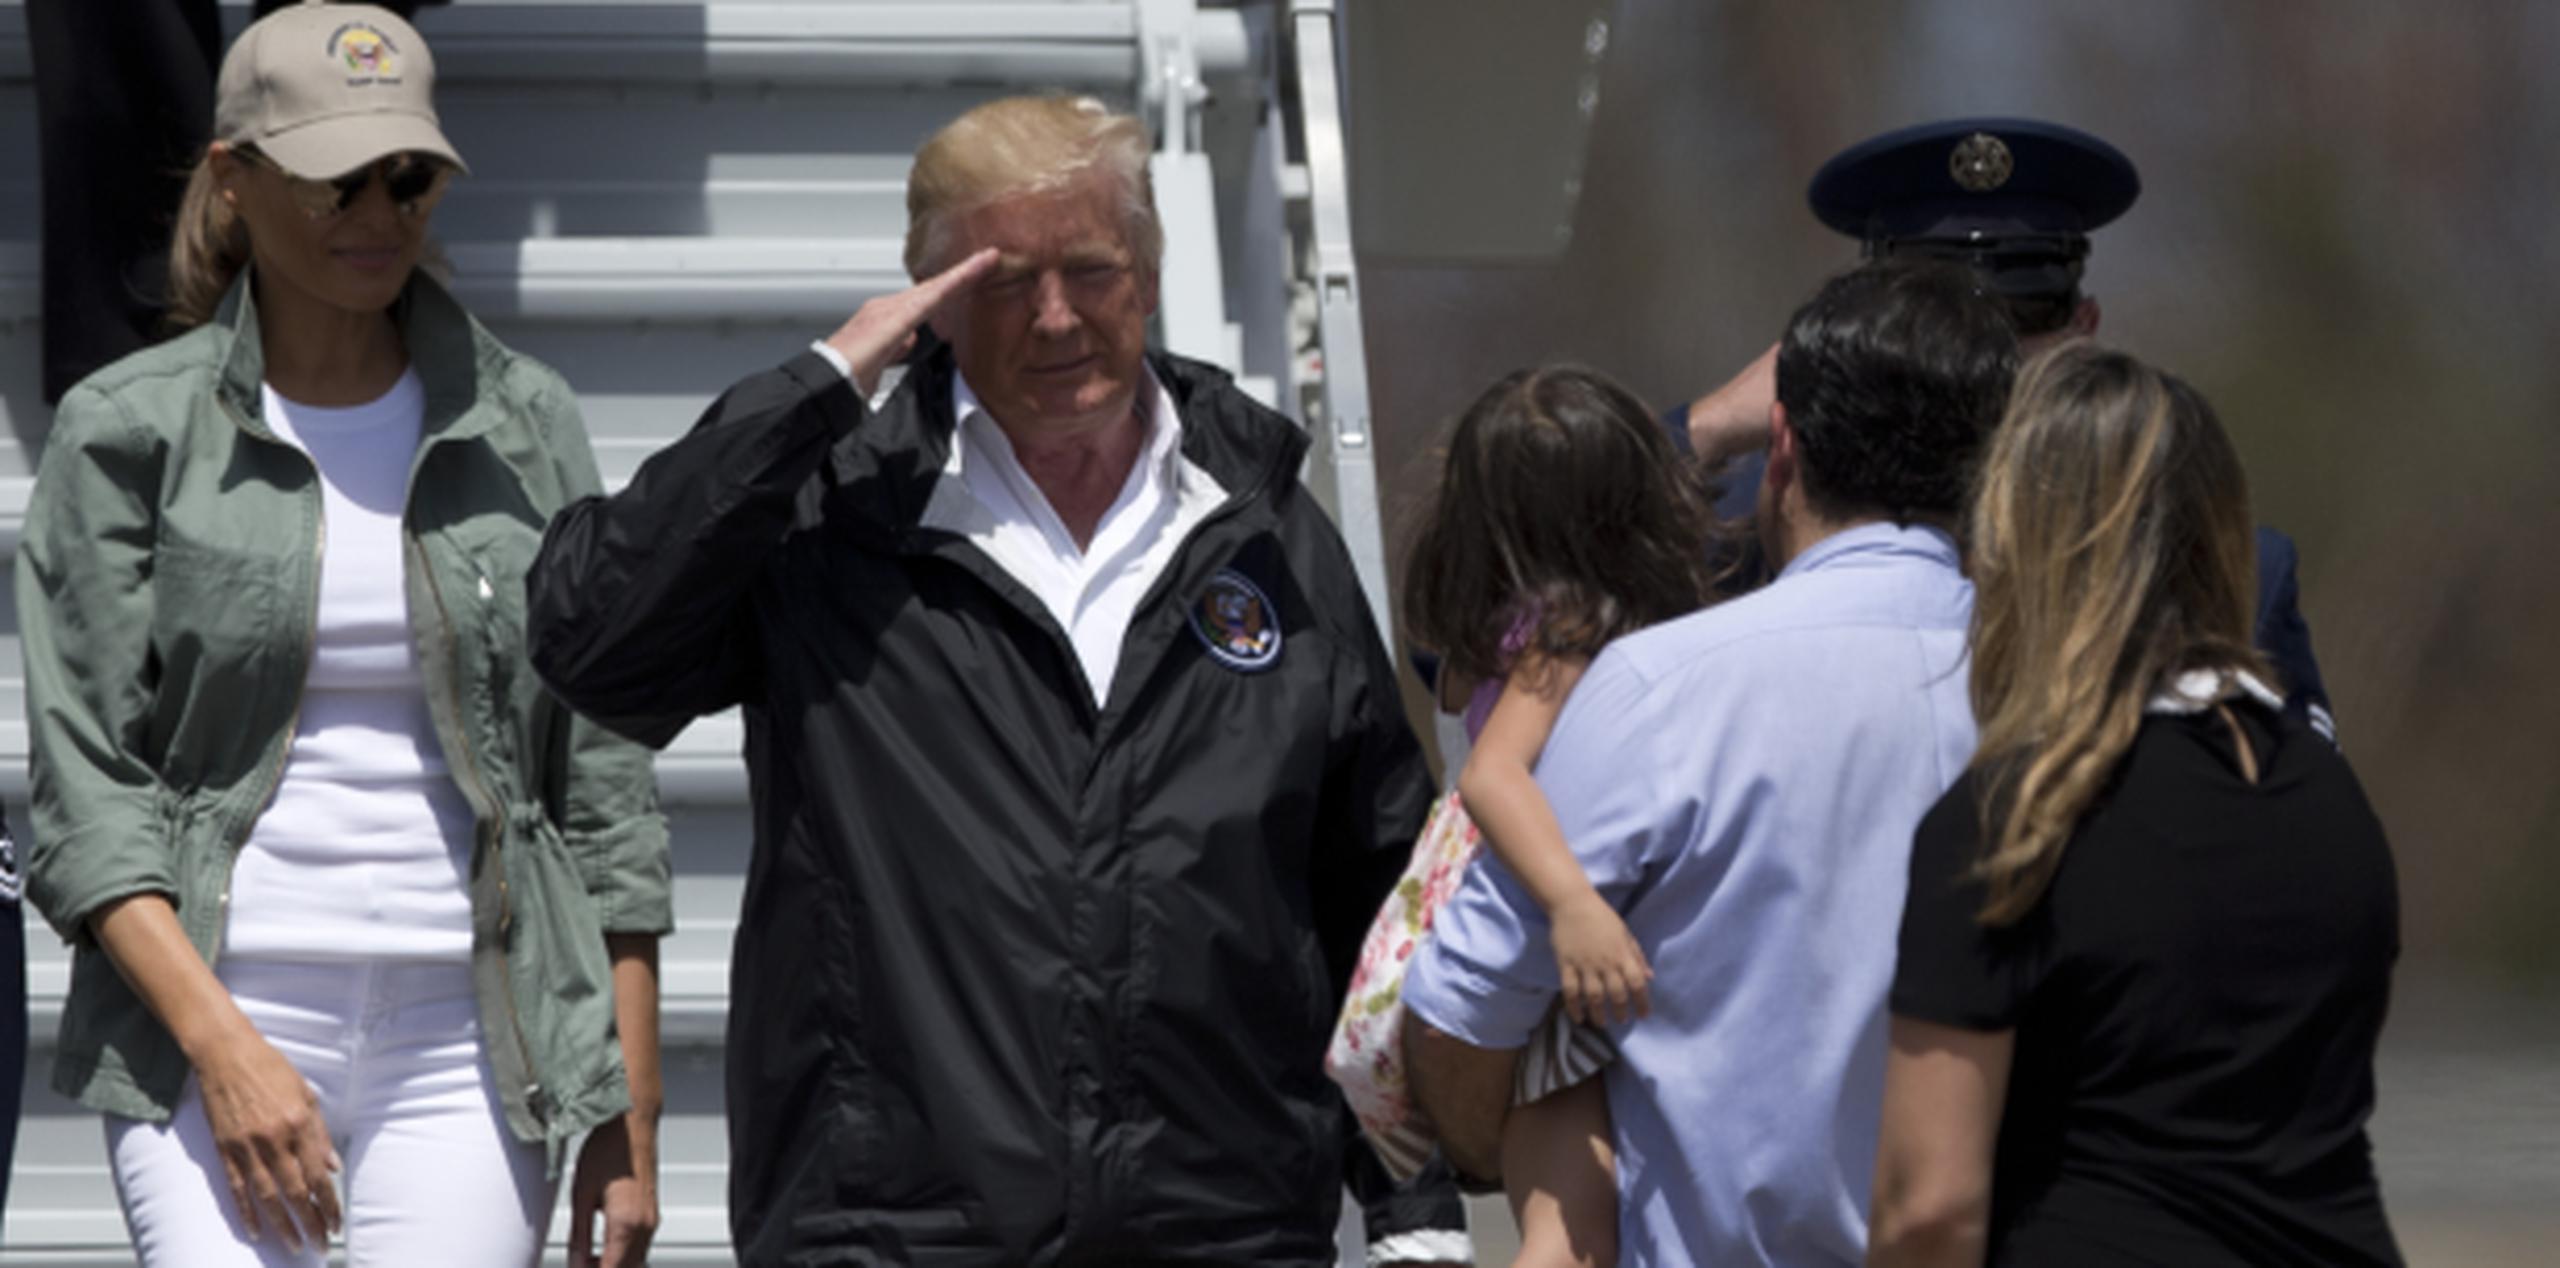 El presidente saluda a la Primera Familia de Puerto Rico tras llegar en Air Force One. (xavier.araujo@gfrmedia.com)